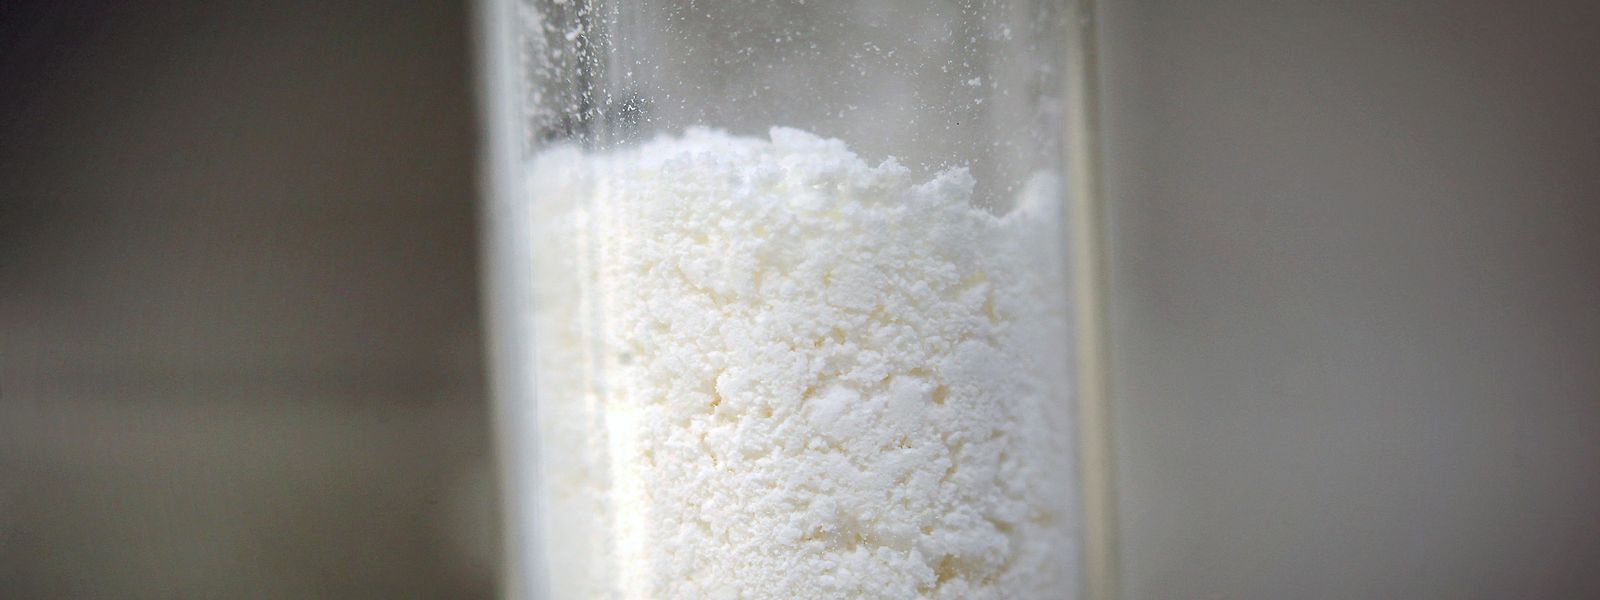 Eine Probe mit Amphetamin steht im Landeskriminalamt (LKA) auf einem Labortisch.